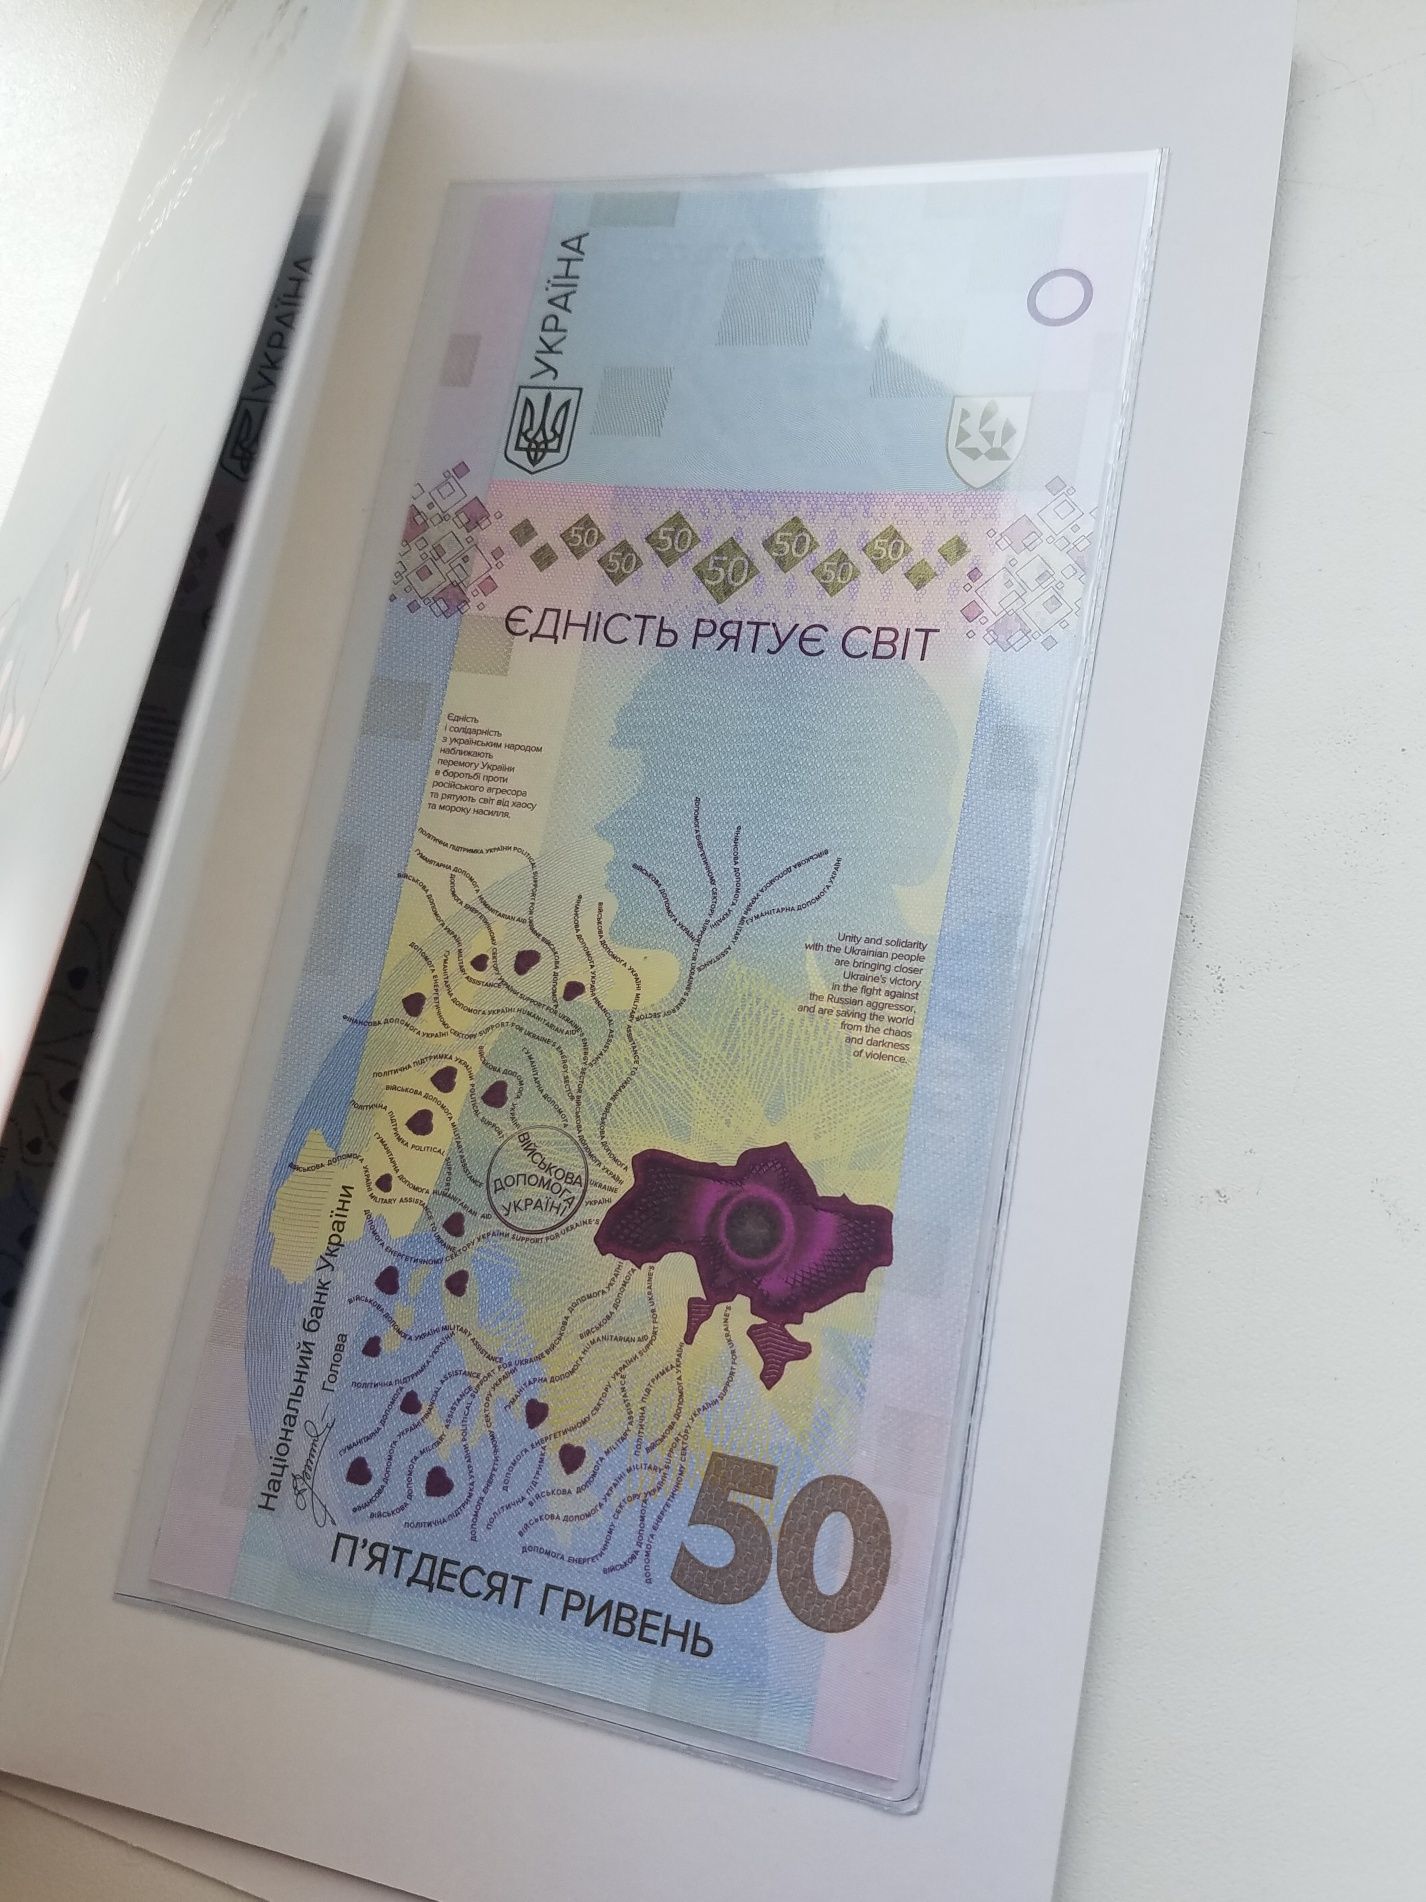 Дві Банкноти 50 гривень 2024 року Єдність рятує світ. Дві штуки